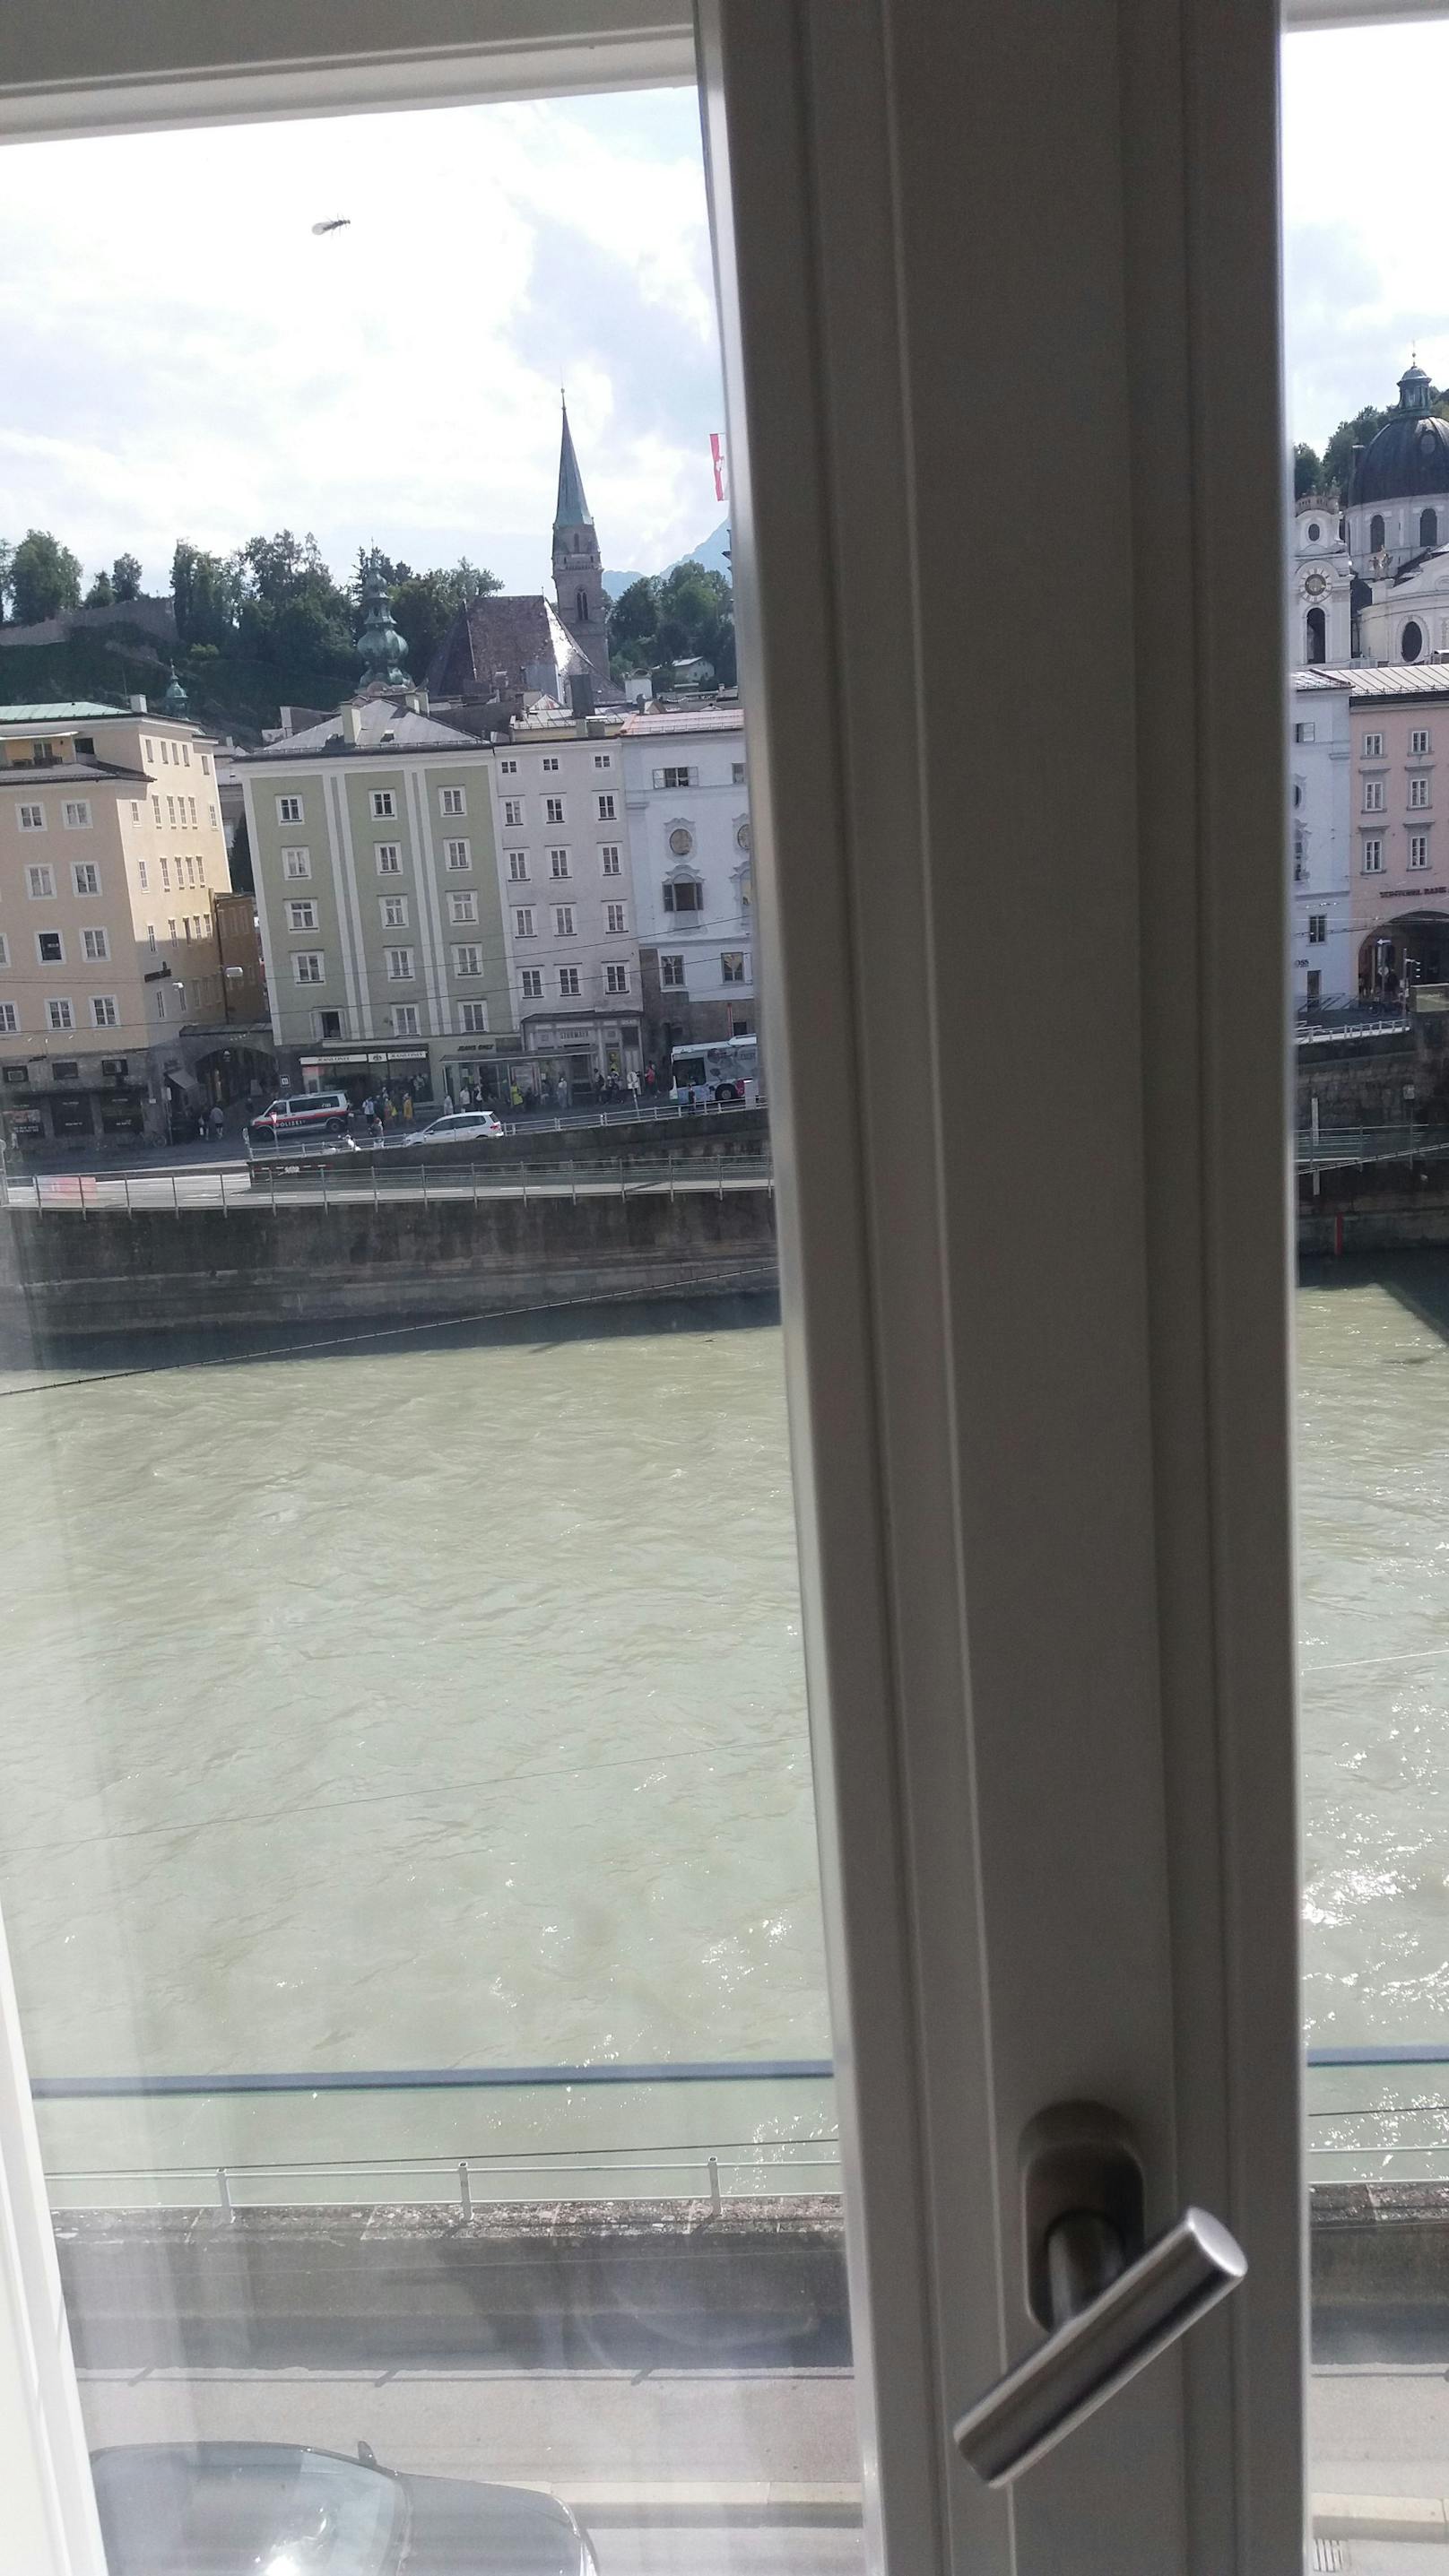 Die Aussicht auf die Stadt Salzburg: Das Hotel Stein liegt direkt am Flussufer der Salzach